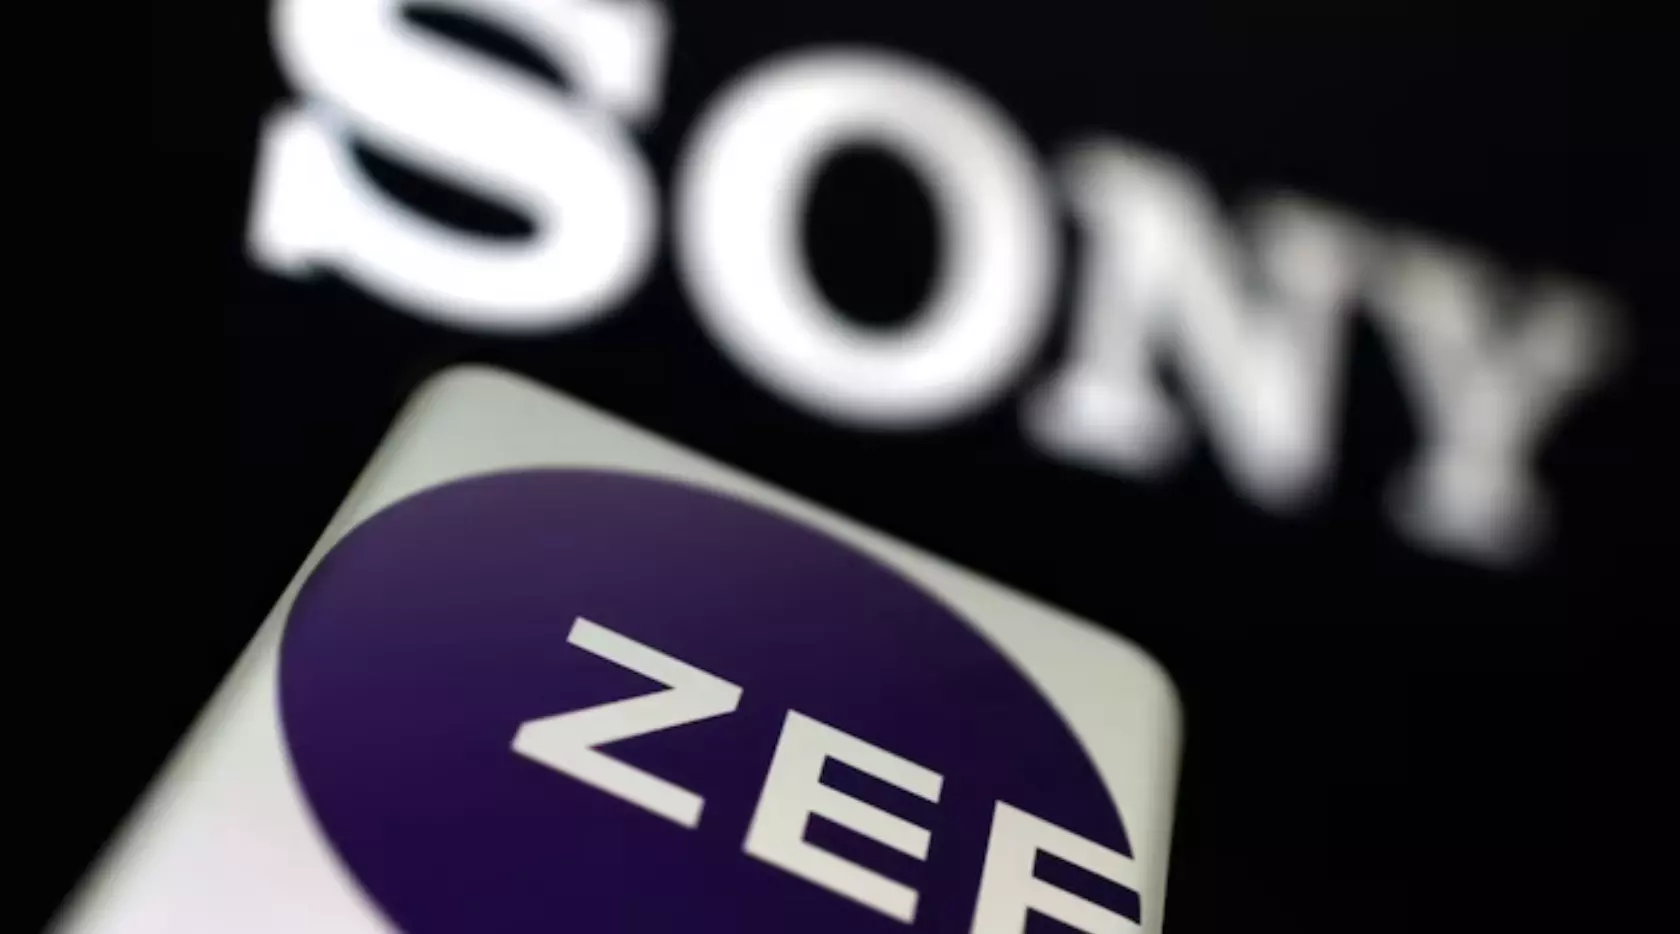 Zee, Sony engage in talks to extend merger deadline